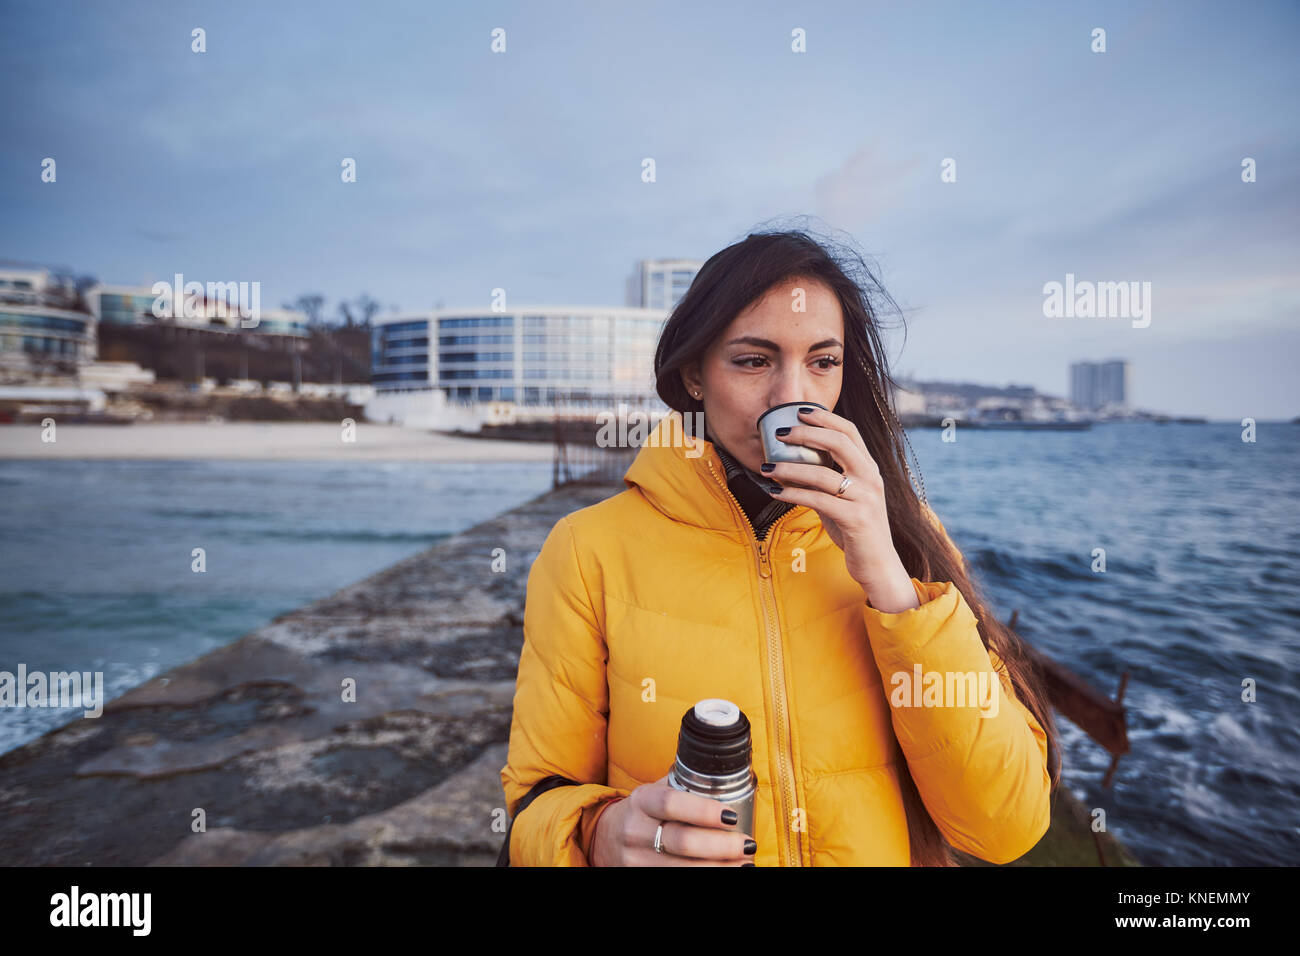 Woman on pier drinking from flask, Odessa, Odessa Oblast, Ukraine, Europe Stock Photo